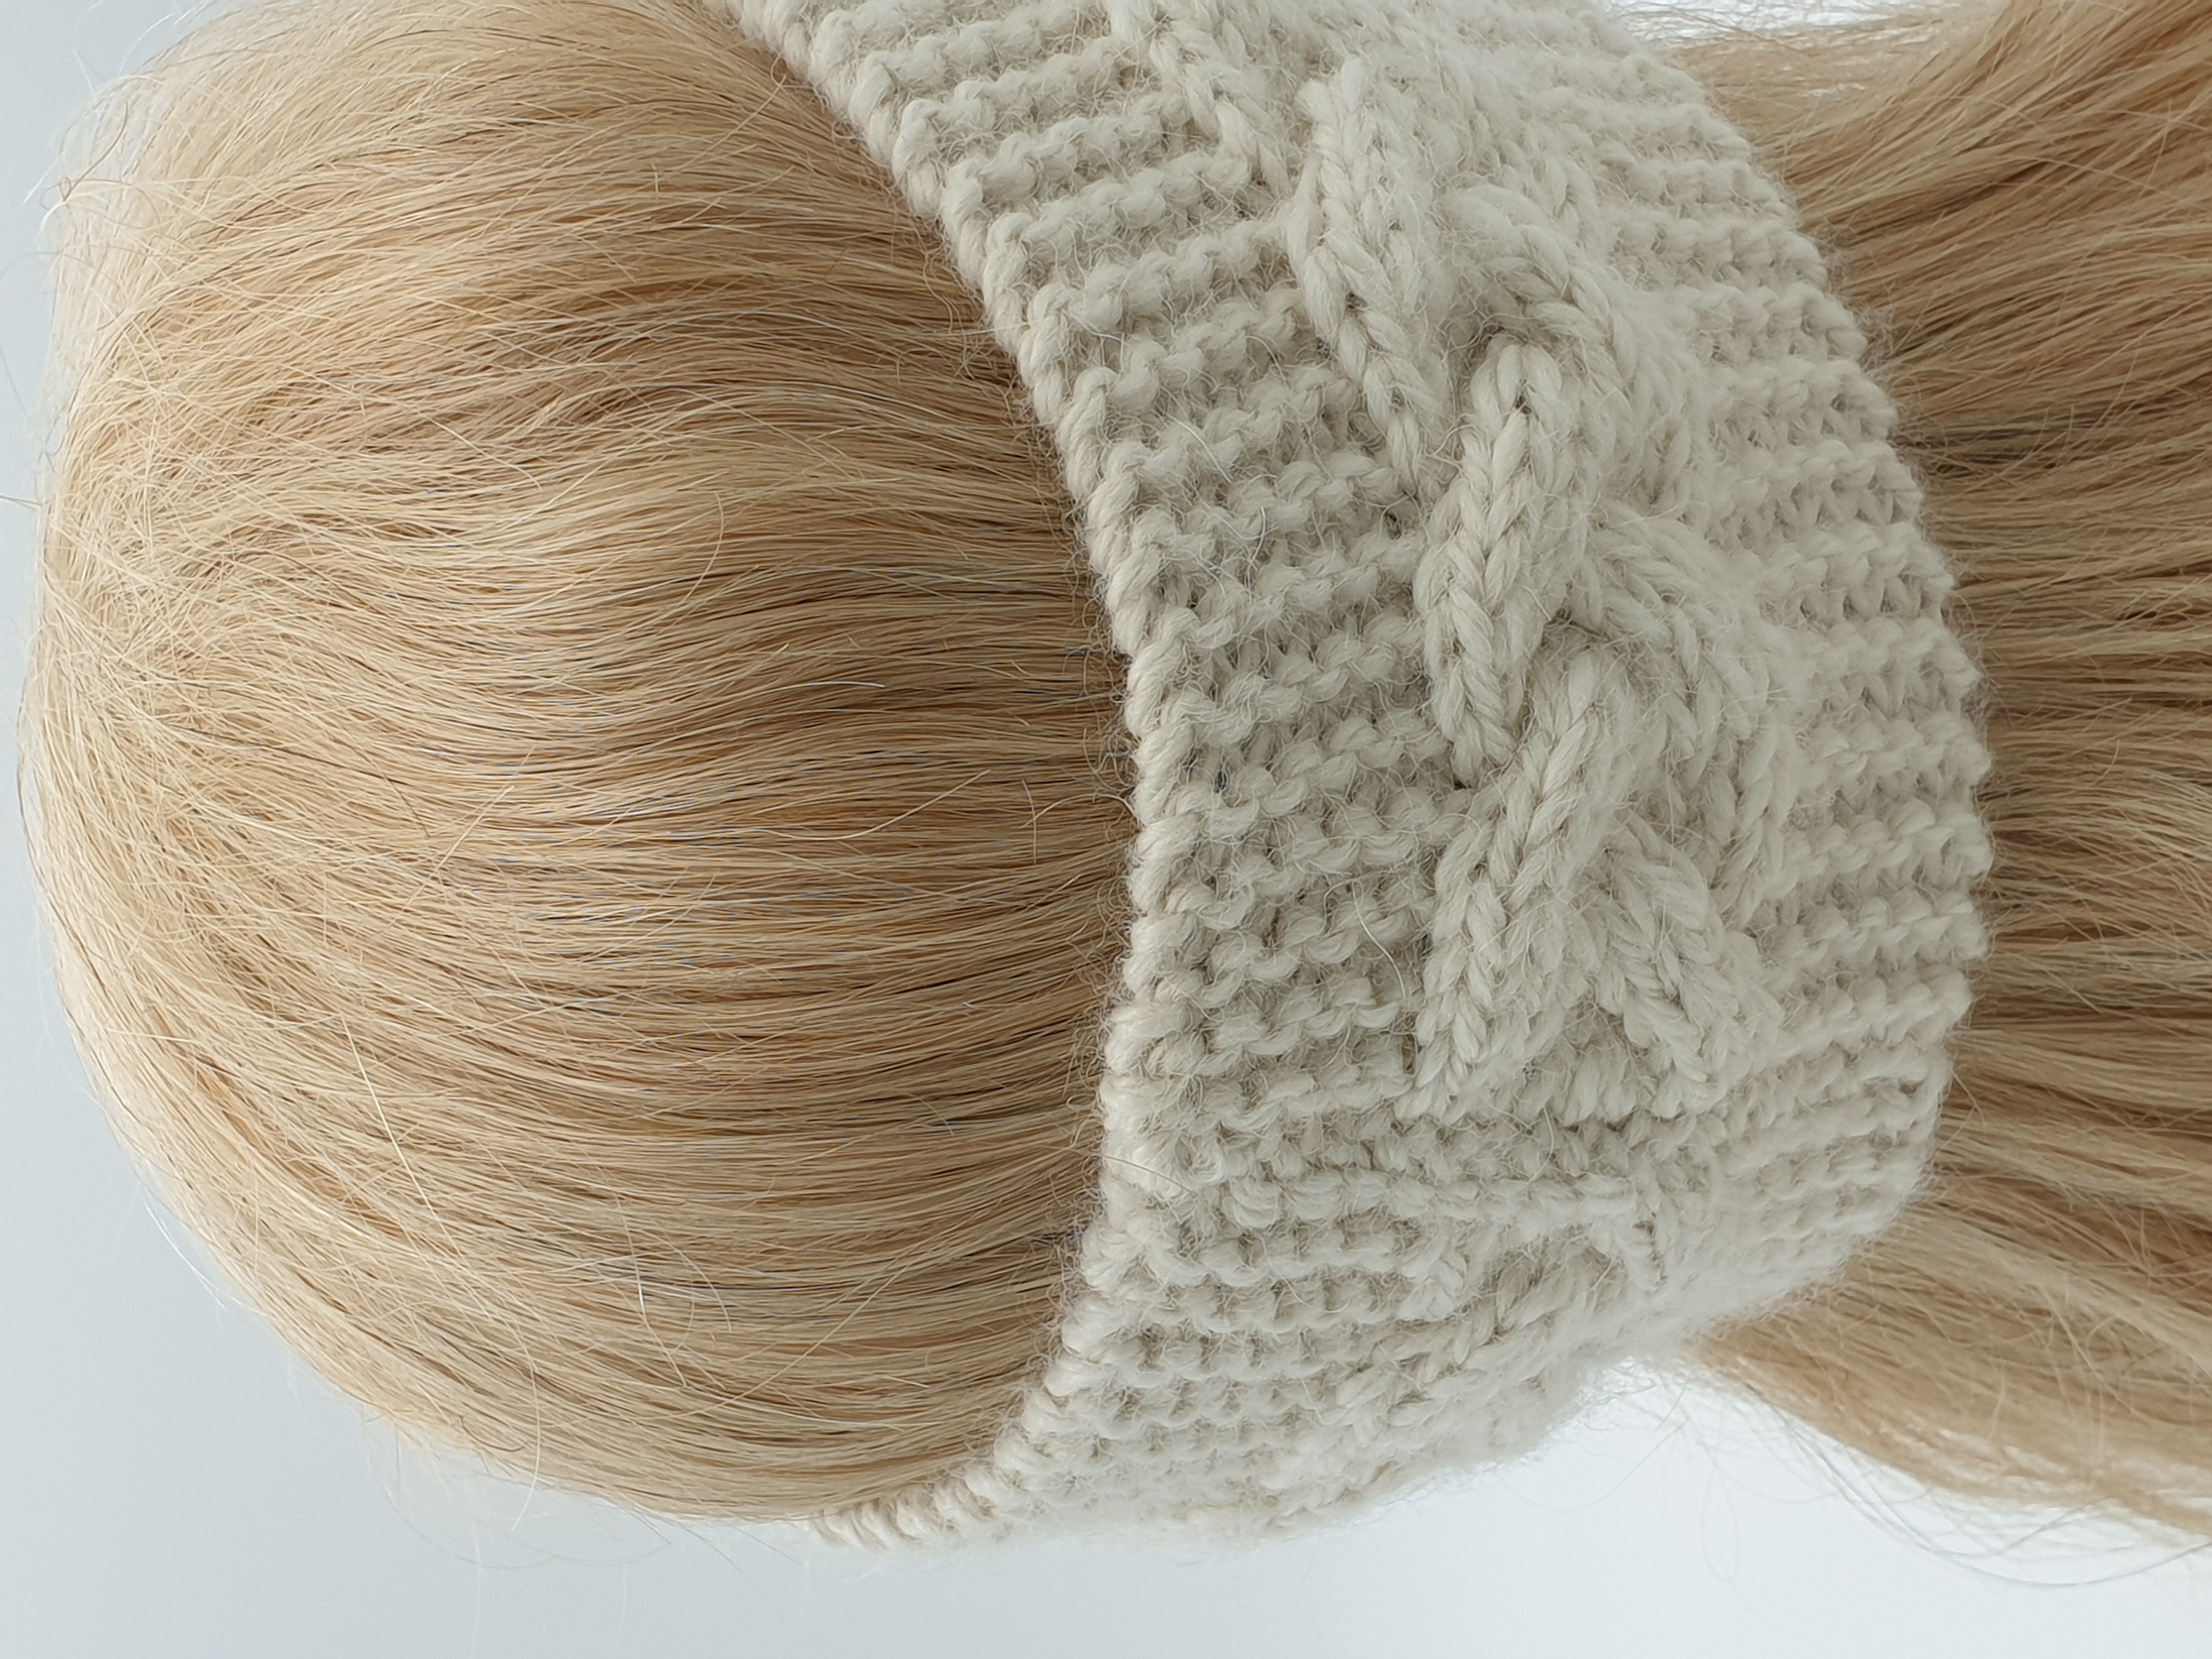 Stirnband aus Alpakawolle im Zopfmusterdesign in vielen verschiedenen Farben